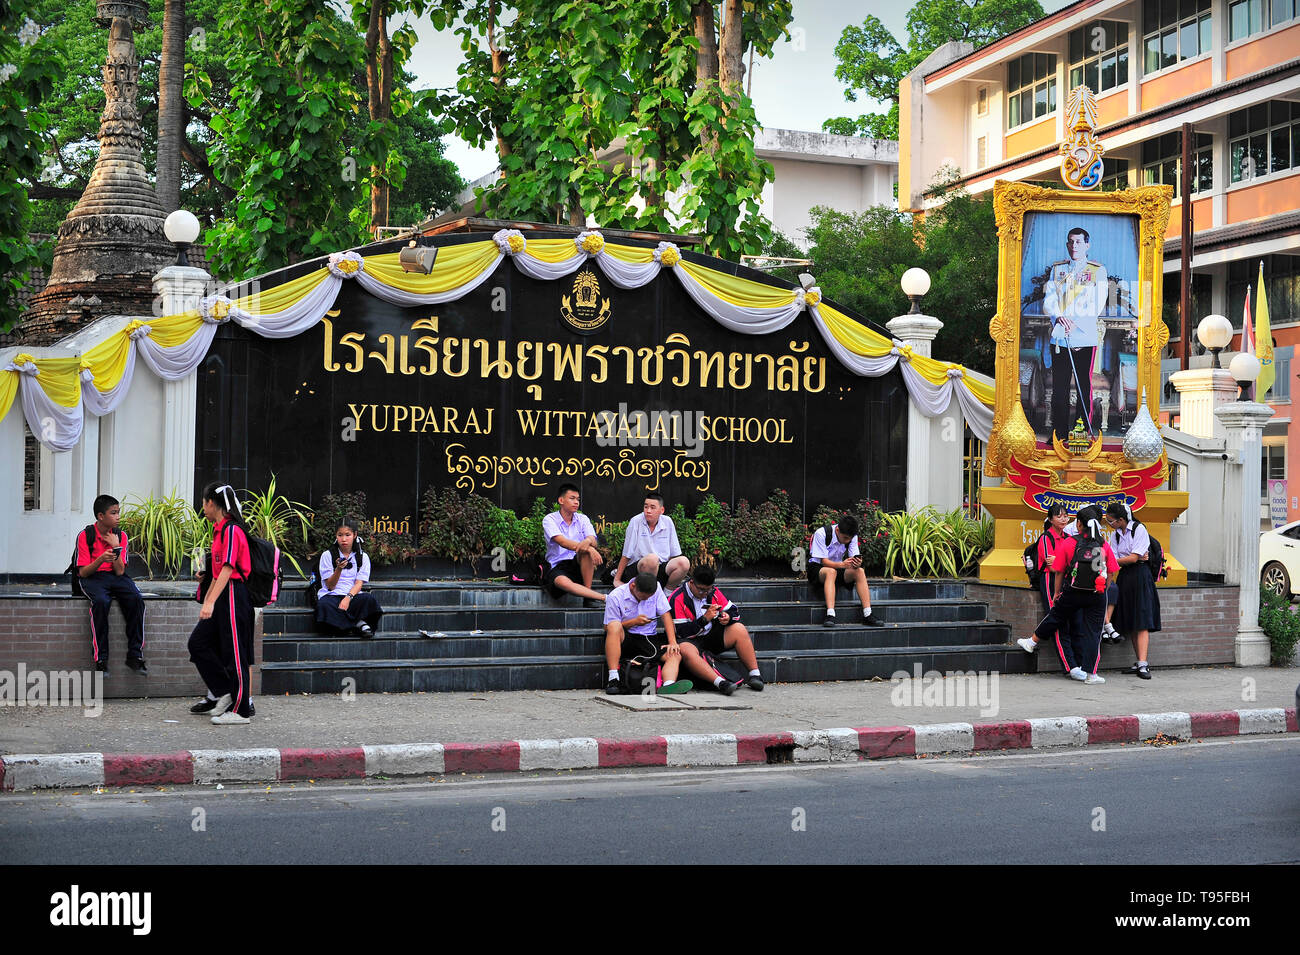 Yupparaj Wittayalai School Phra Pokklao Road Chiang Mai Thailand Stock Photo